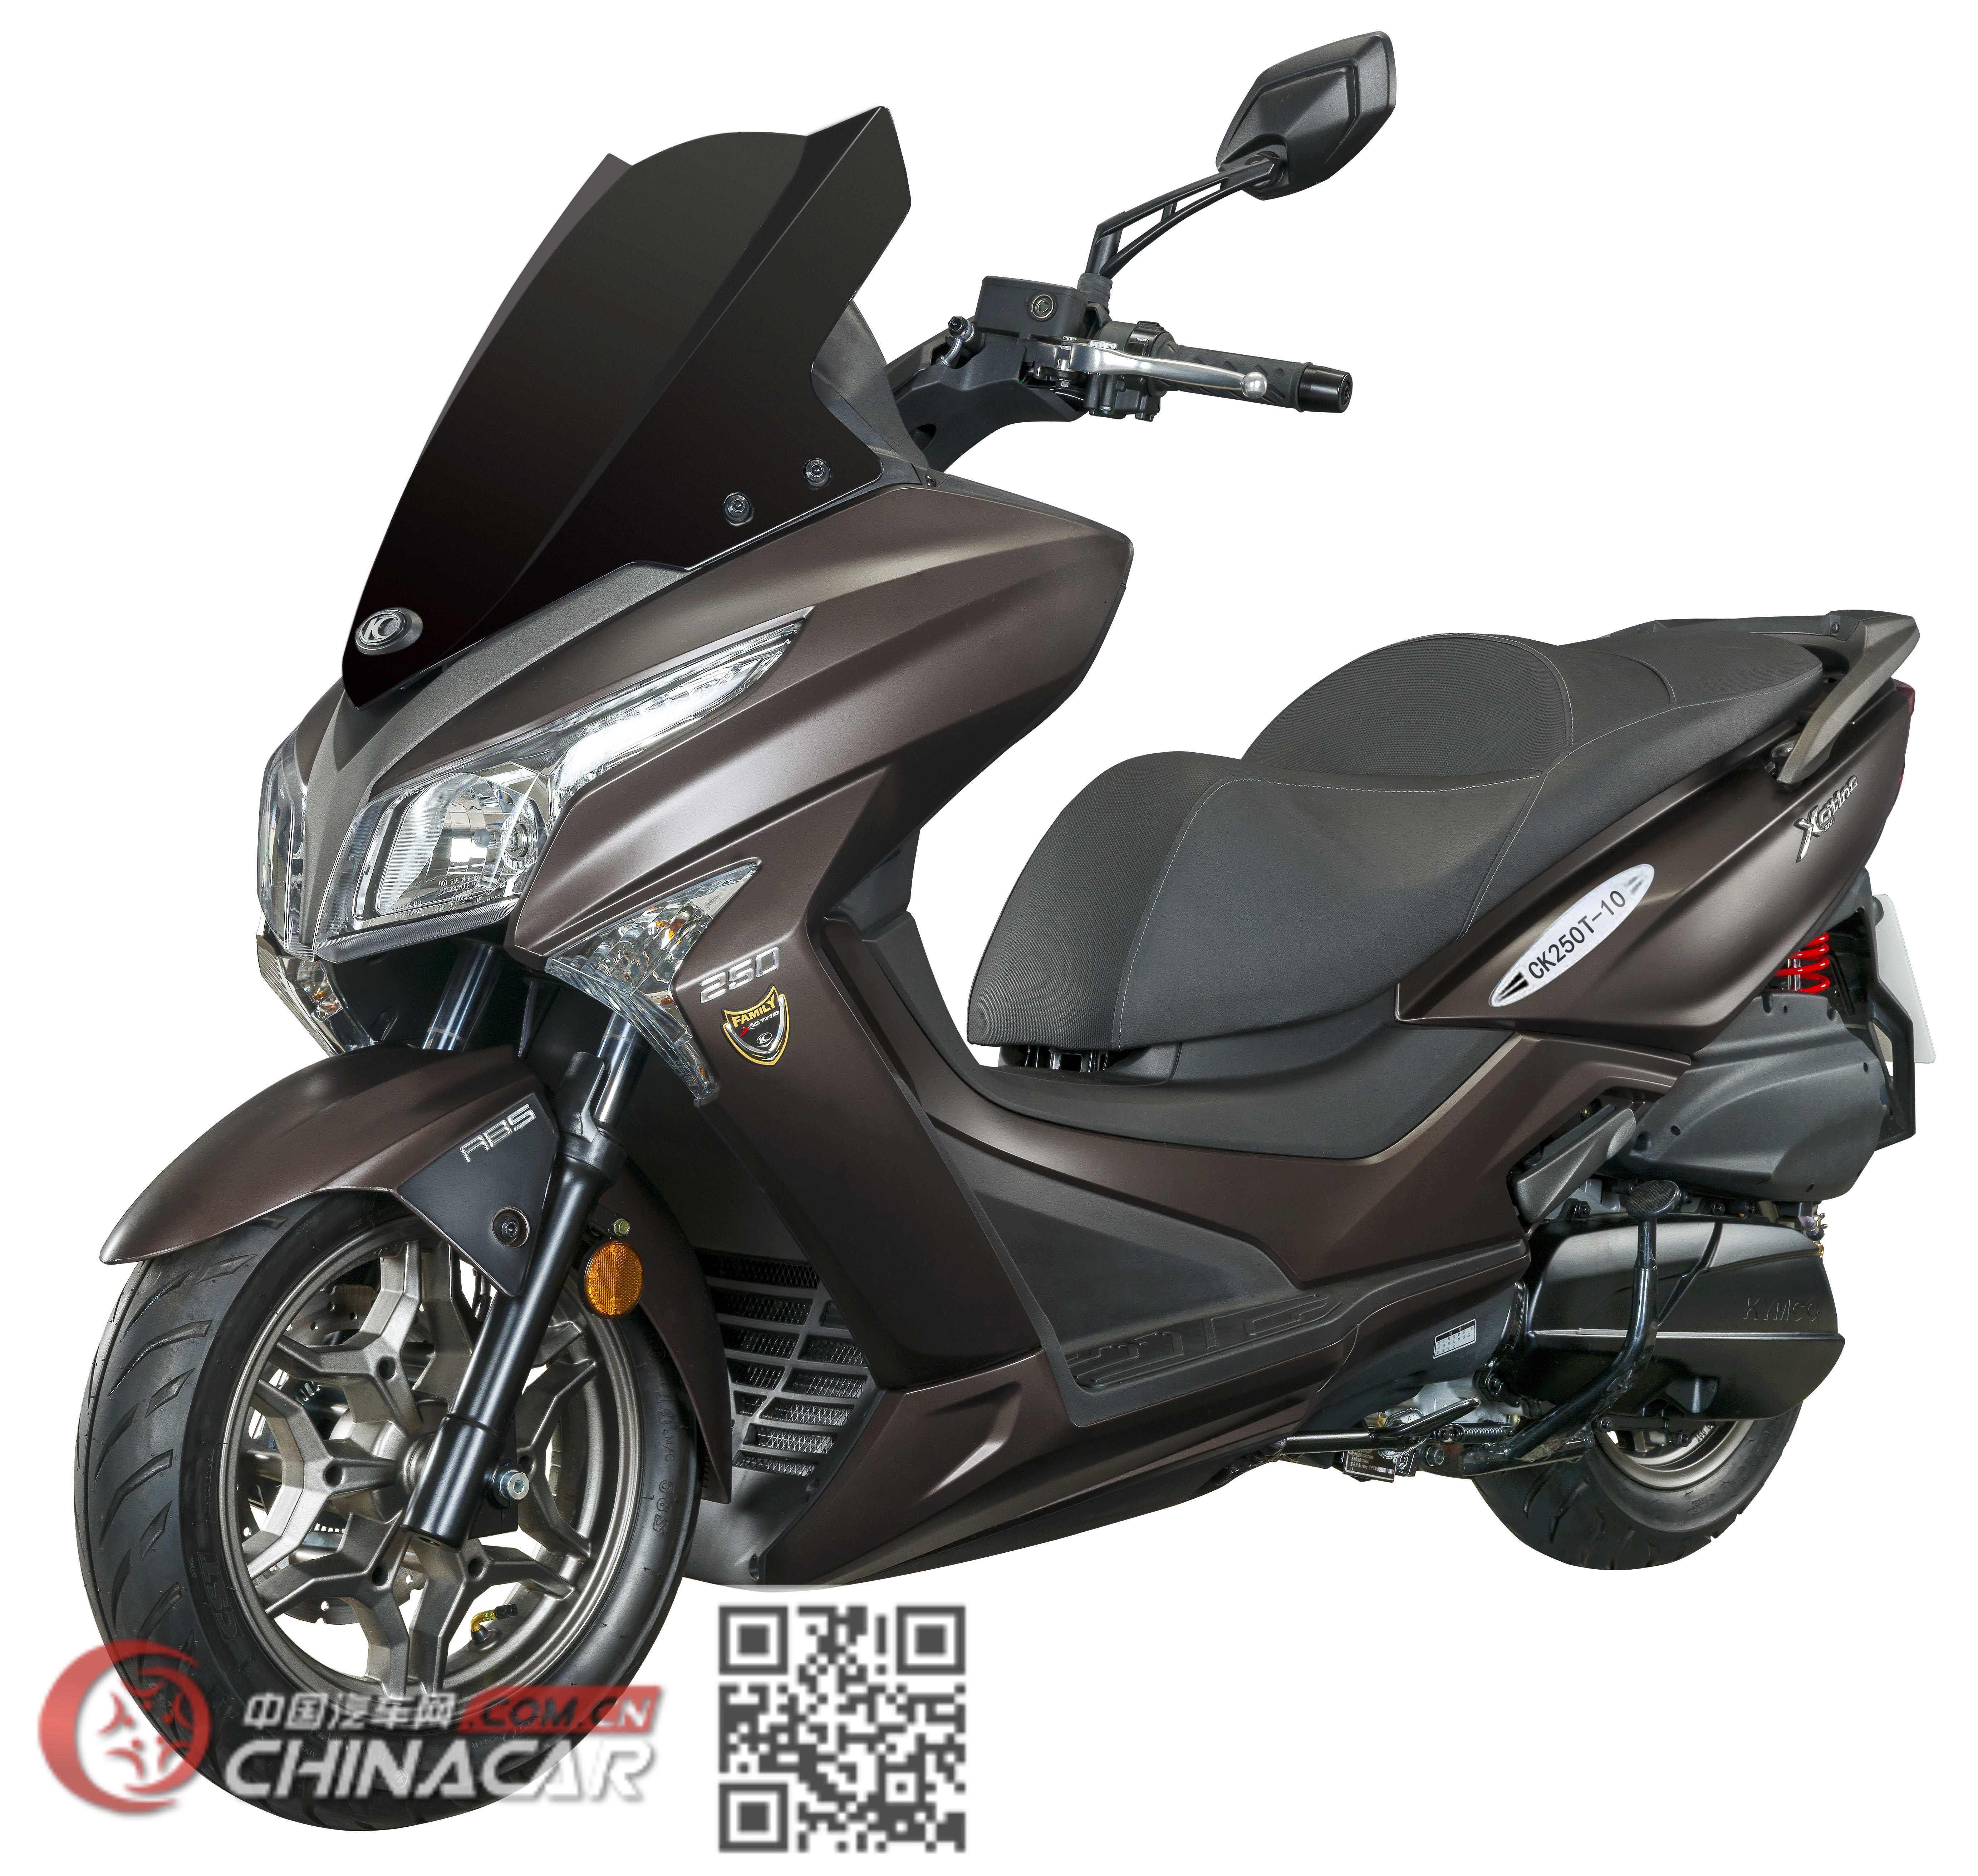 常光牌汽车图片常光牌摩托车图片系列常光牌ck250t10型两轮摩托车产品